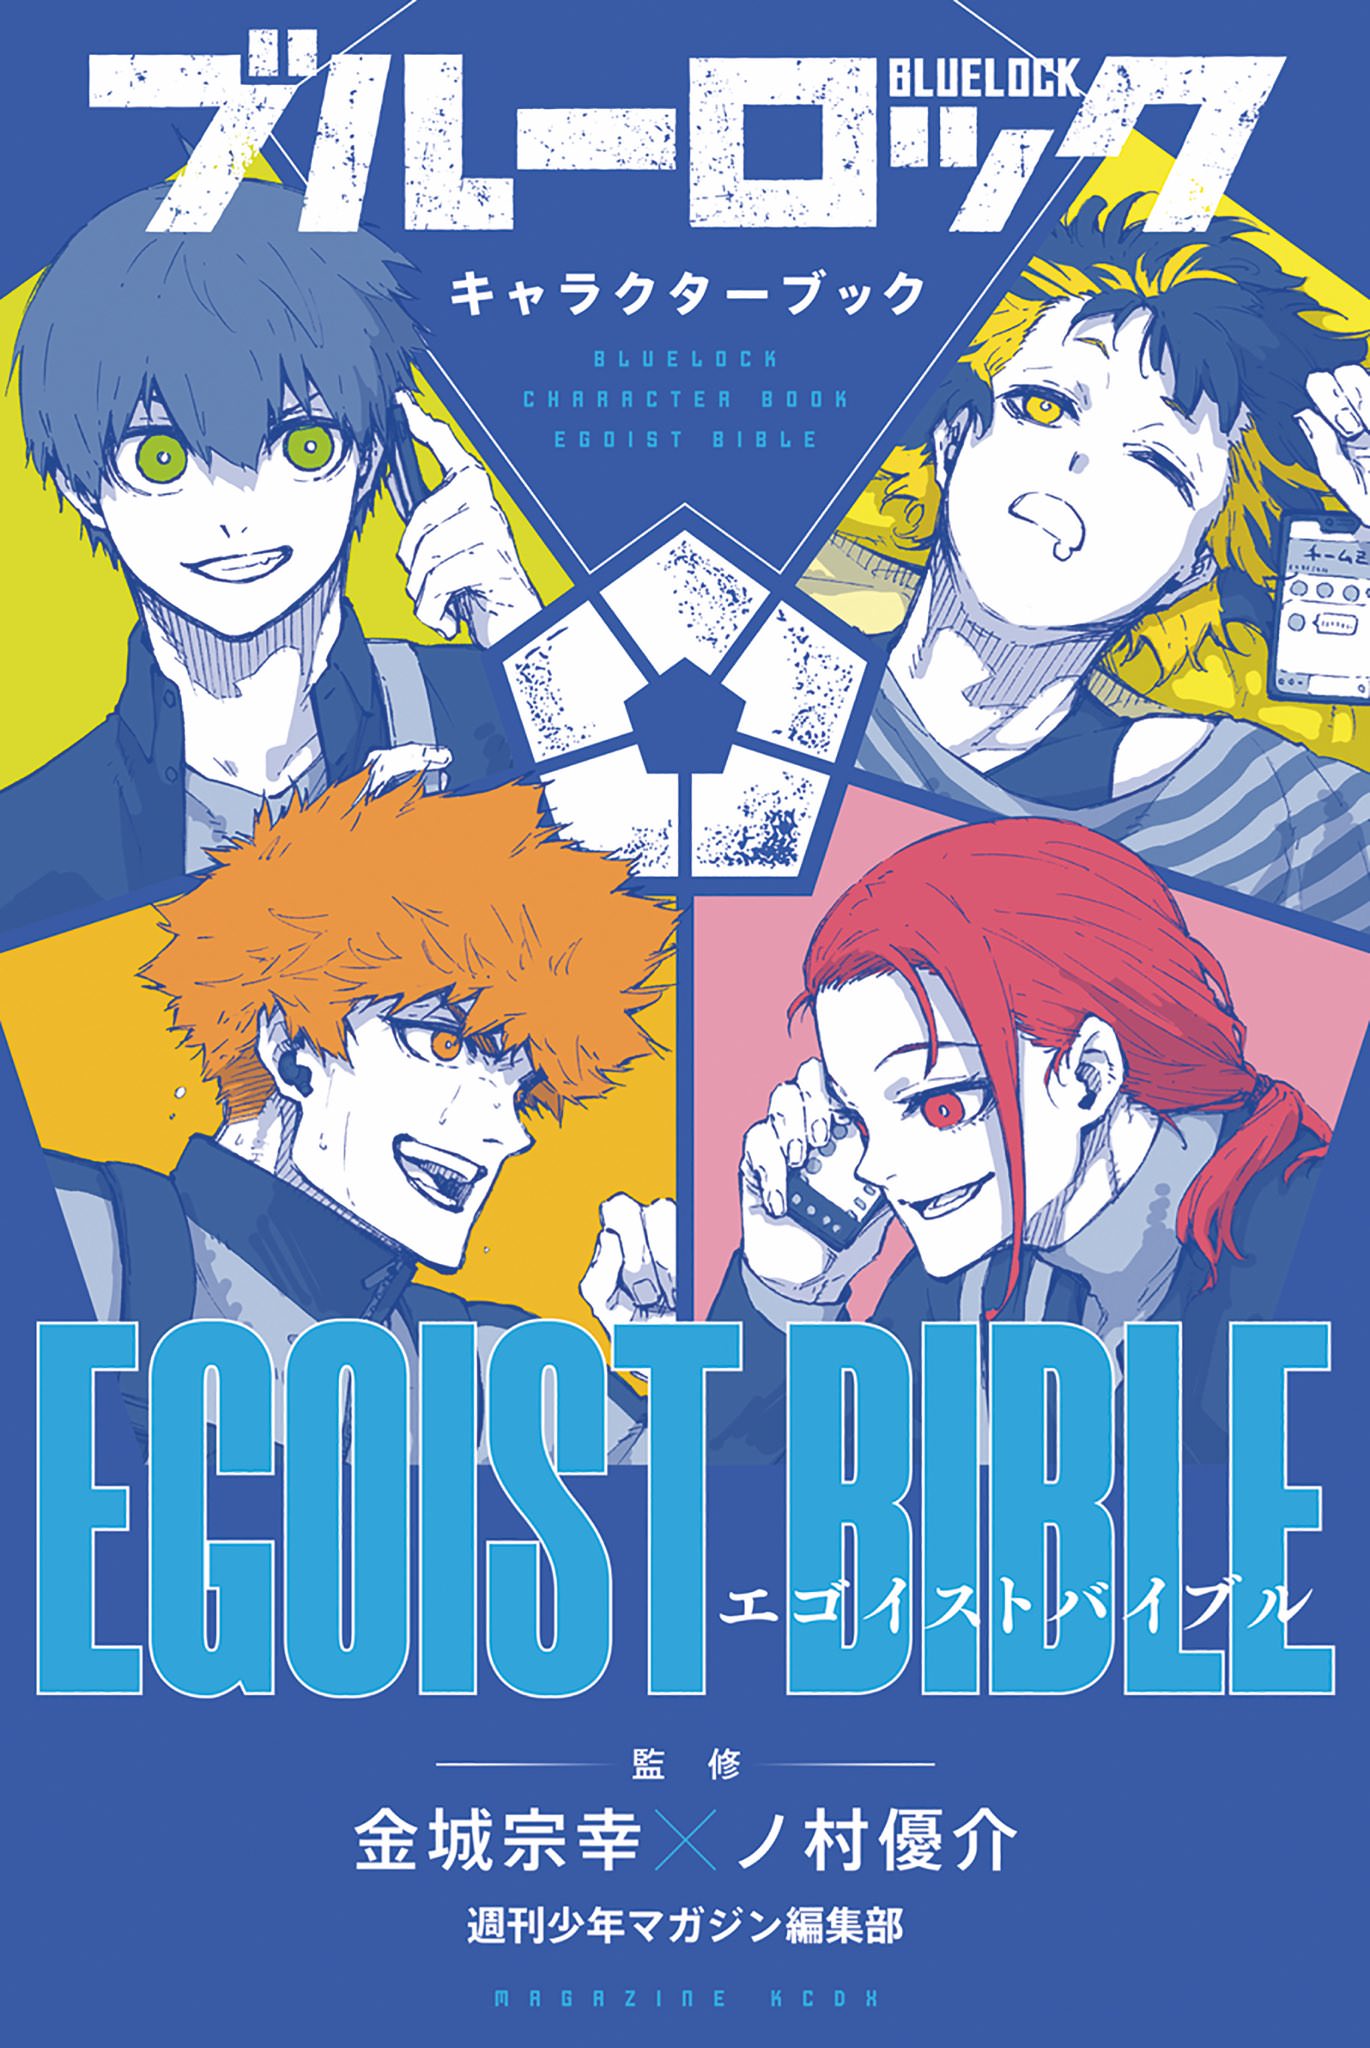 ブルーロック キャラクターブック EGOIST BIBLE 10月17日発売!